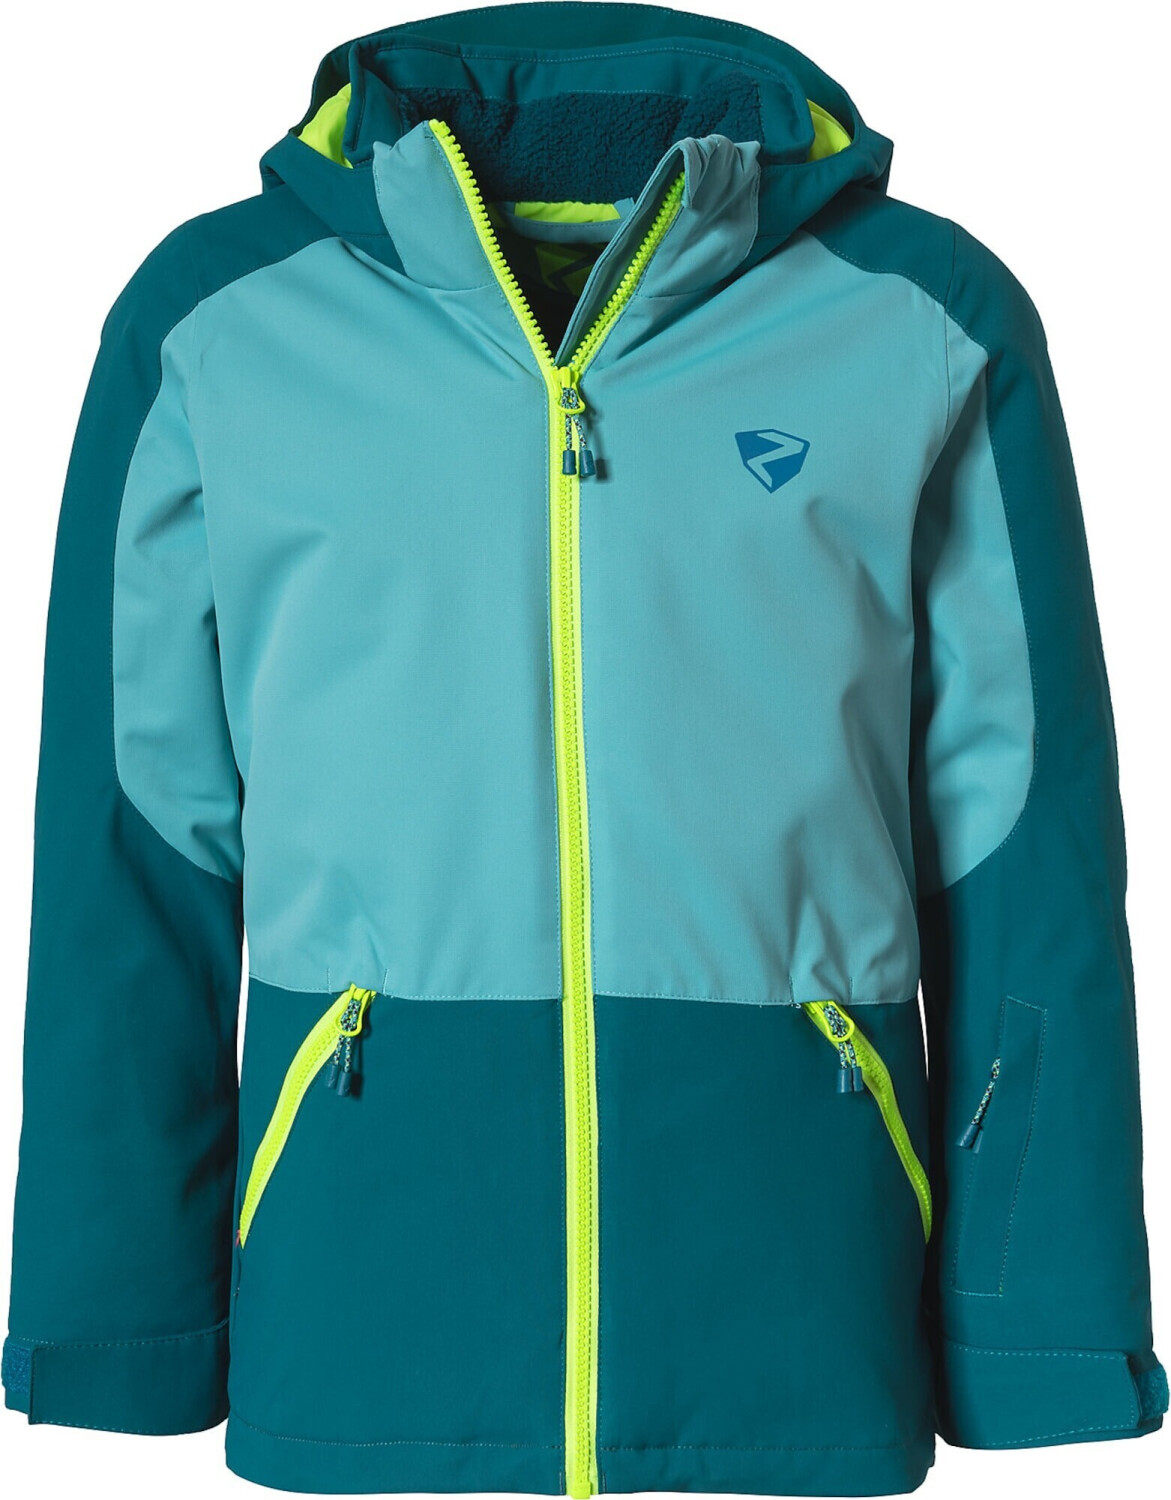 Ziener Amely Ski-Jacket blue 88,90 ab € Preisvergleich bei | sea